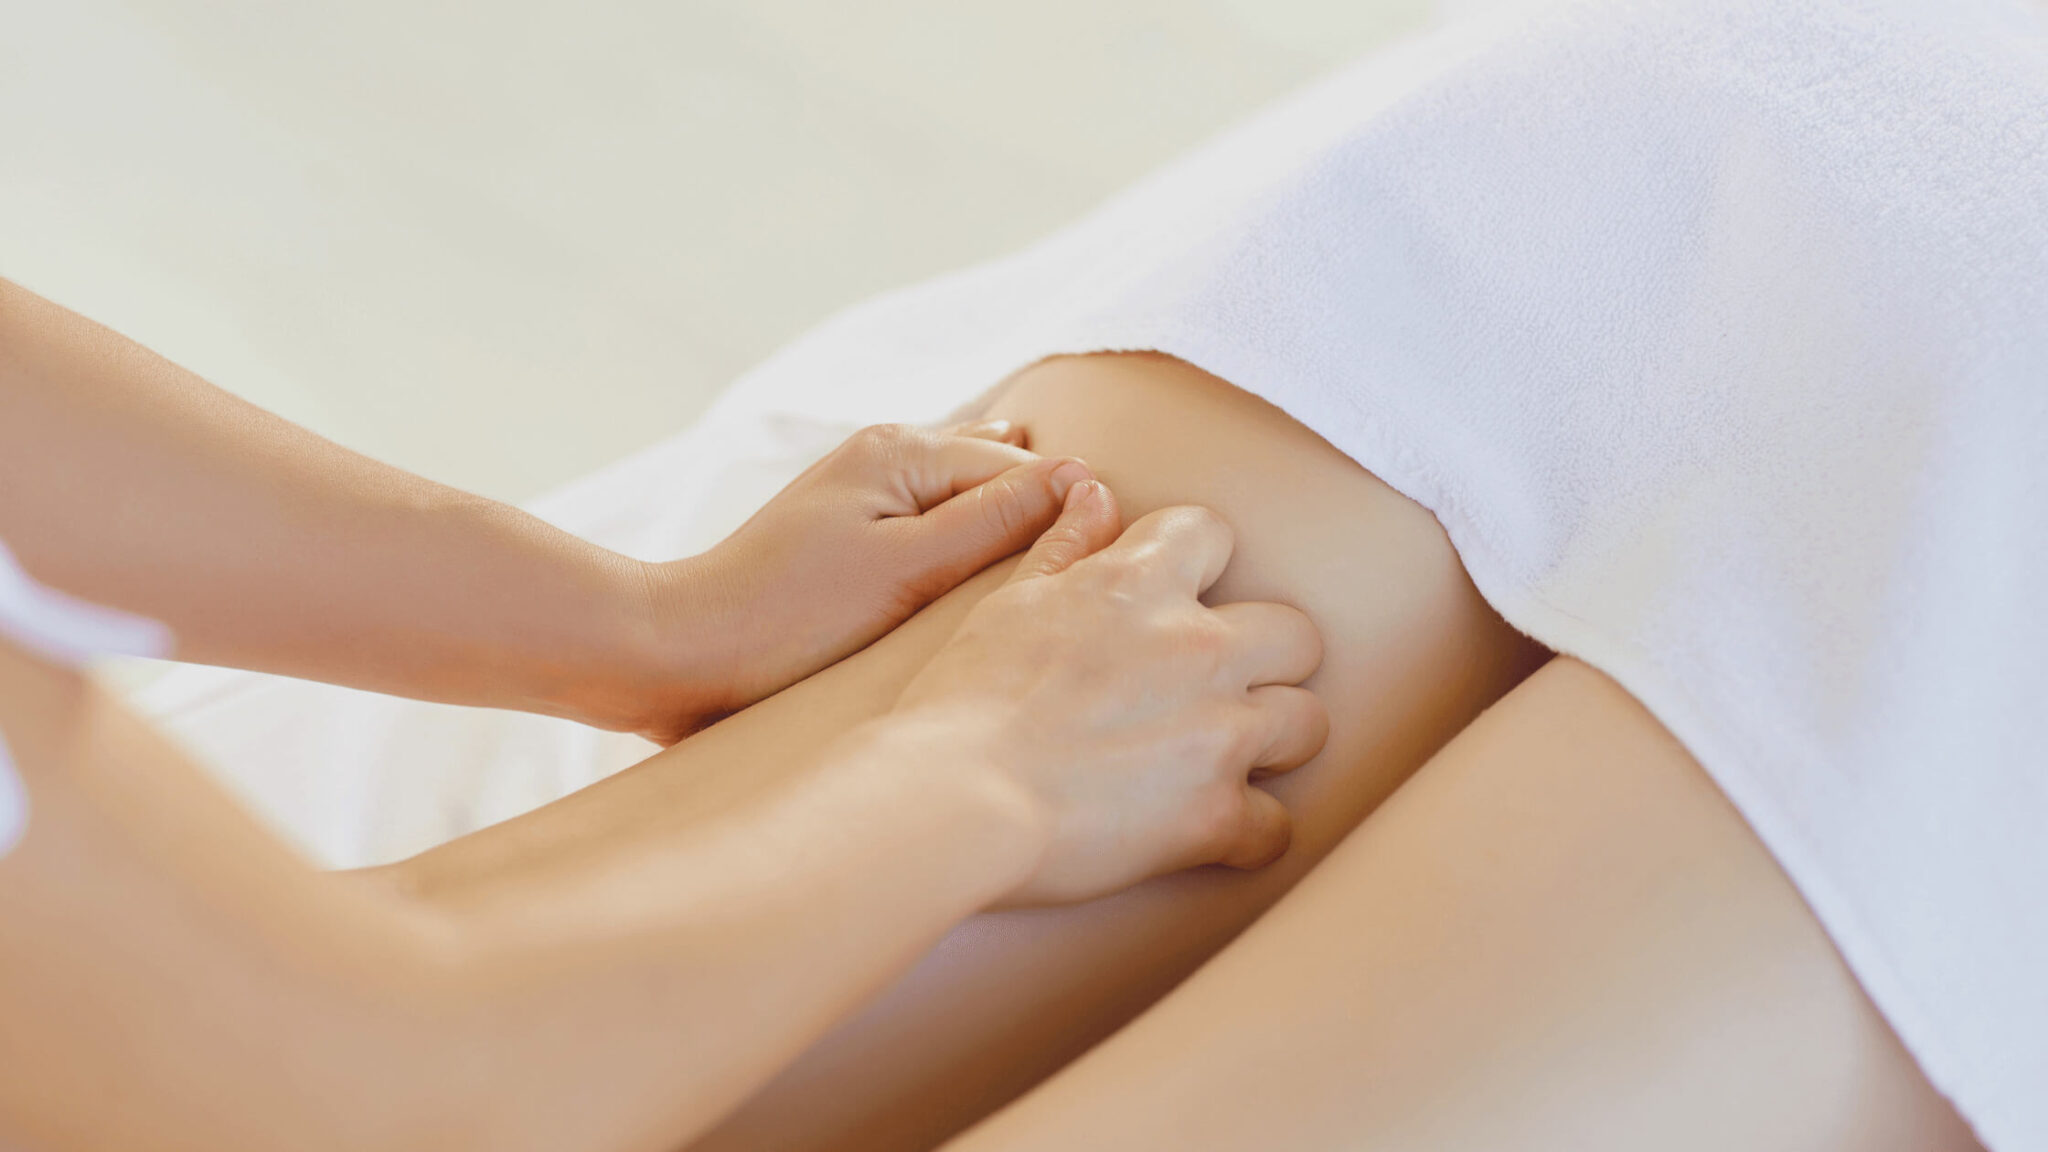 Fisioterapeuta realizando masaje de Drenaje Linfático Piernas a una paciente